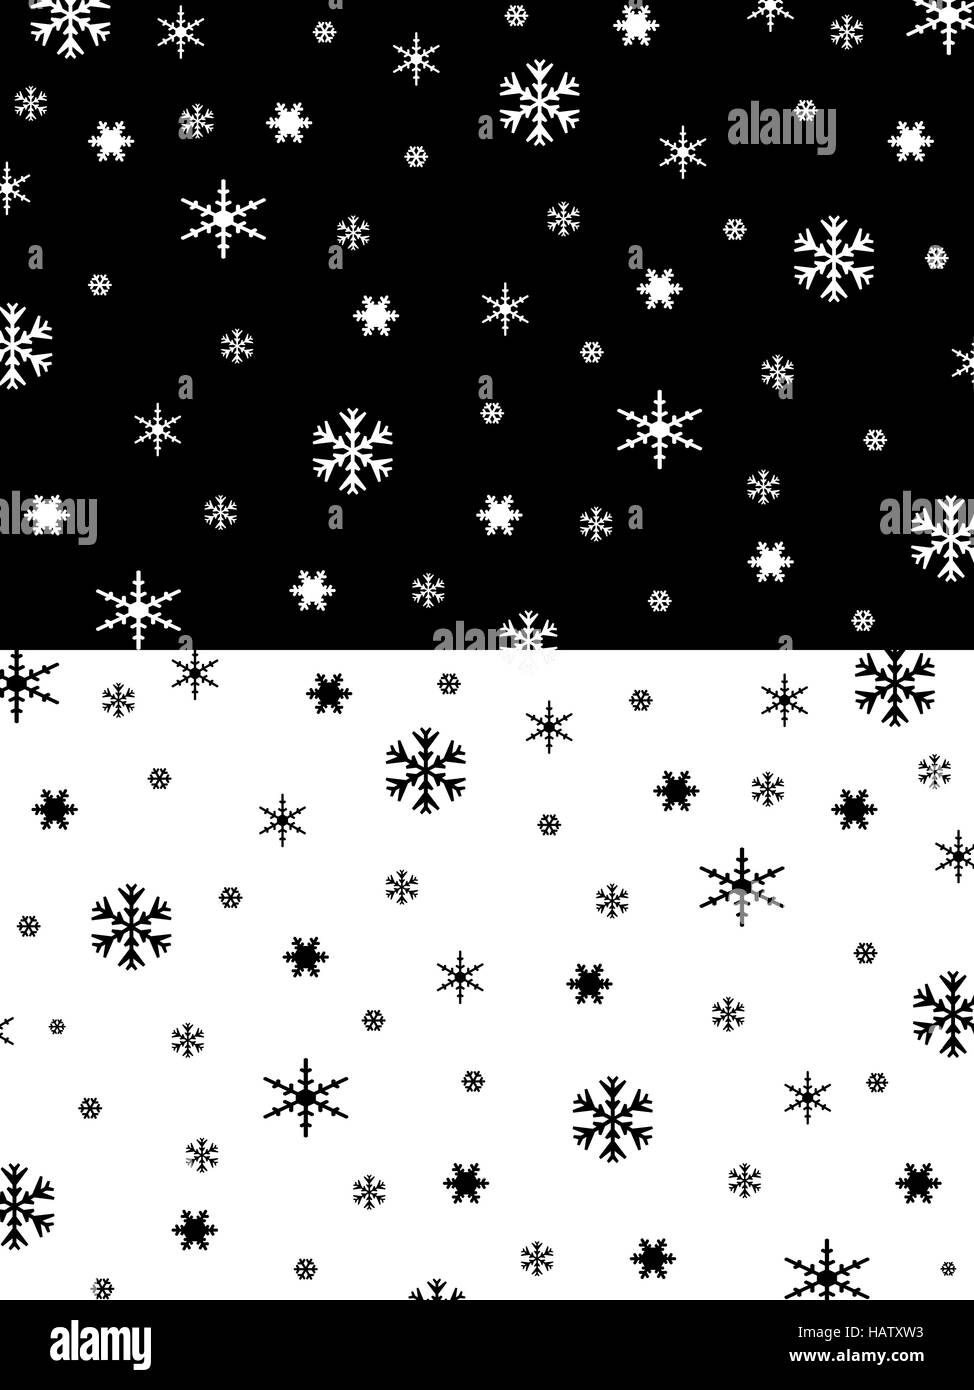 Schneeflockentextur schwarz/weiß Stock Photo